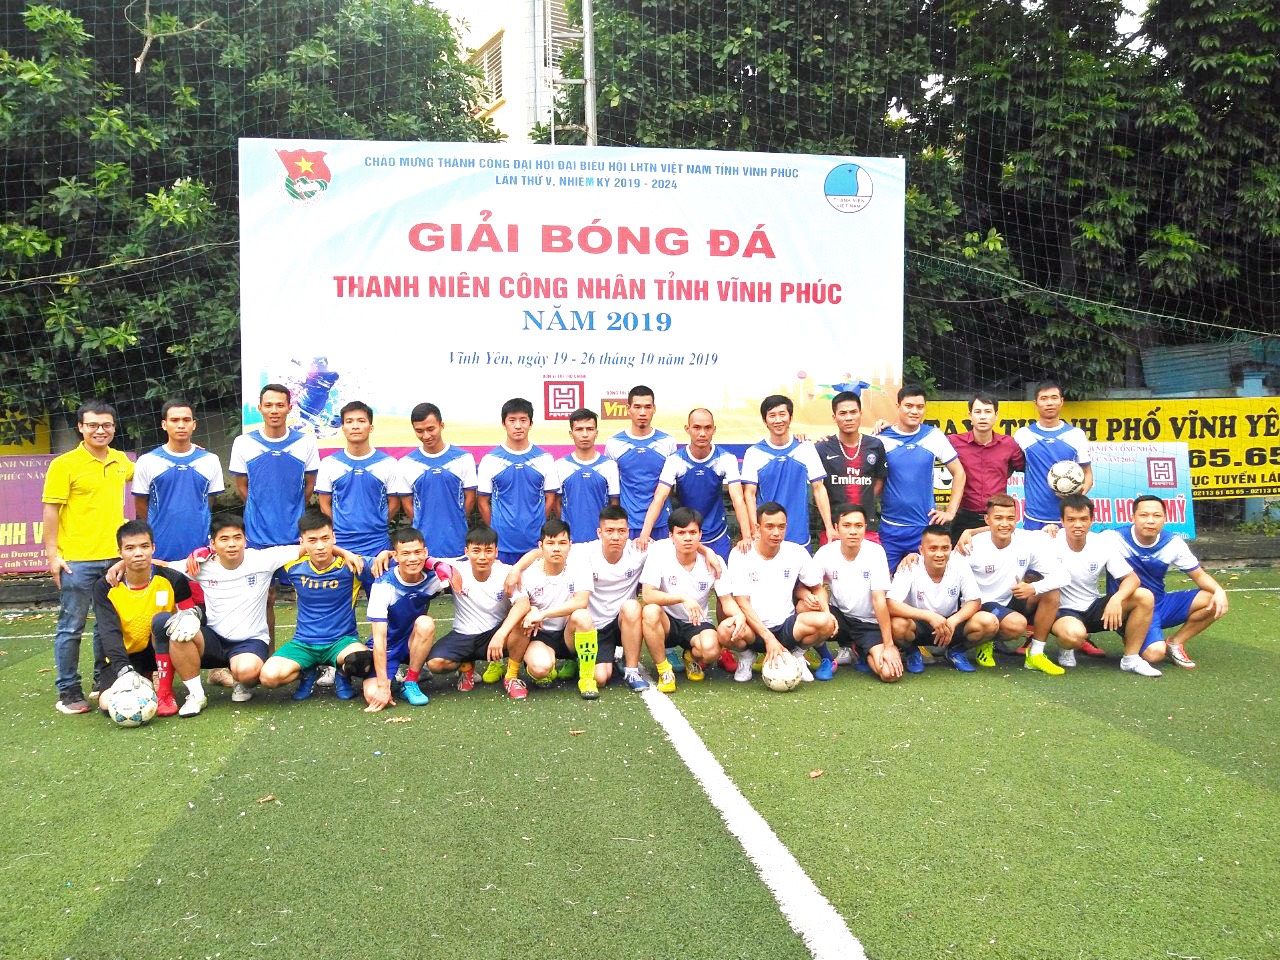 VITTO GROUP tham gia Giải bóng đá Thanh niên Công nhân tỉnh Vĩnh Phúc năm 2019 